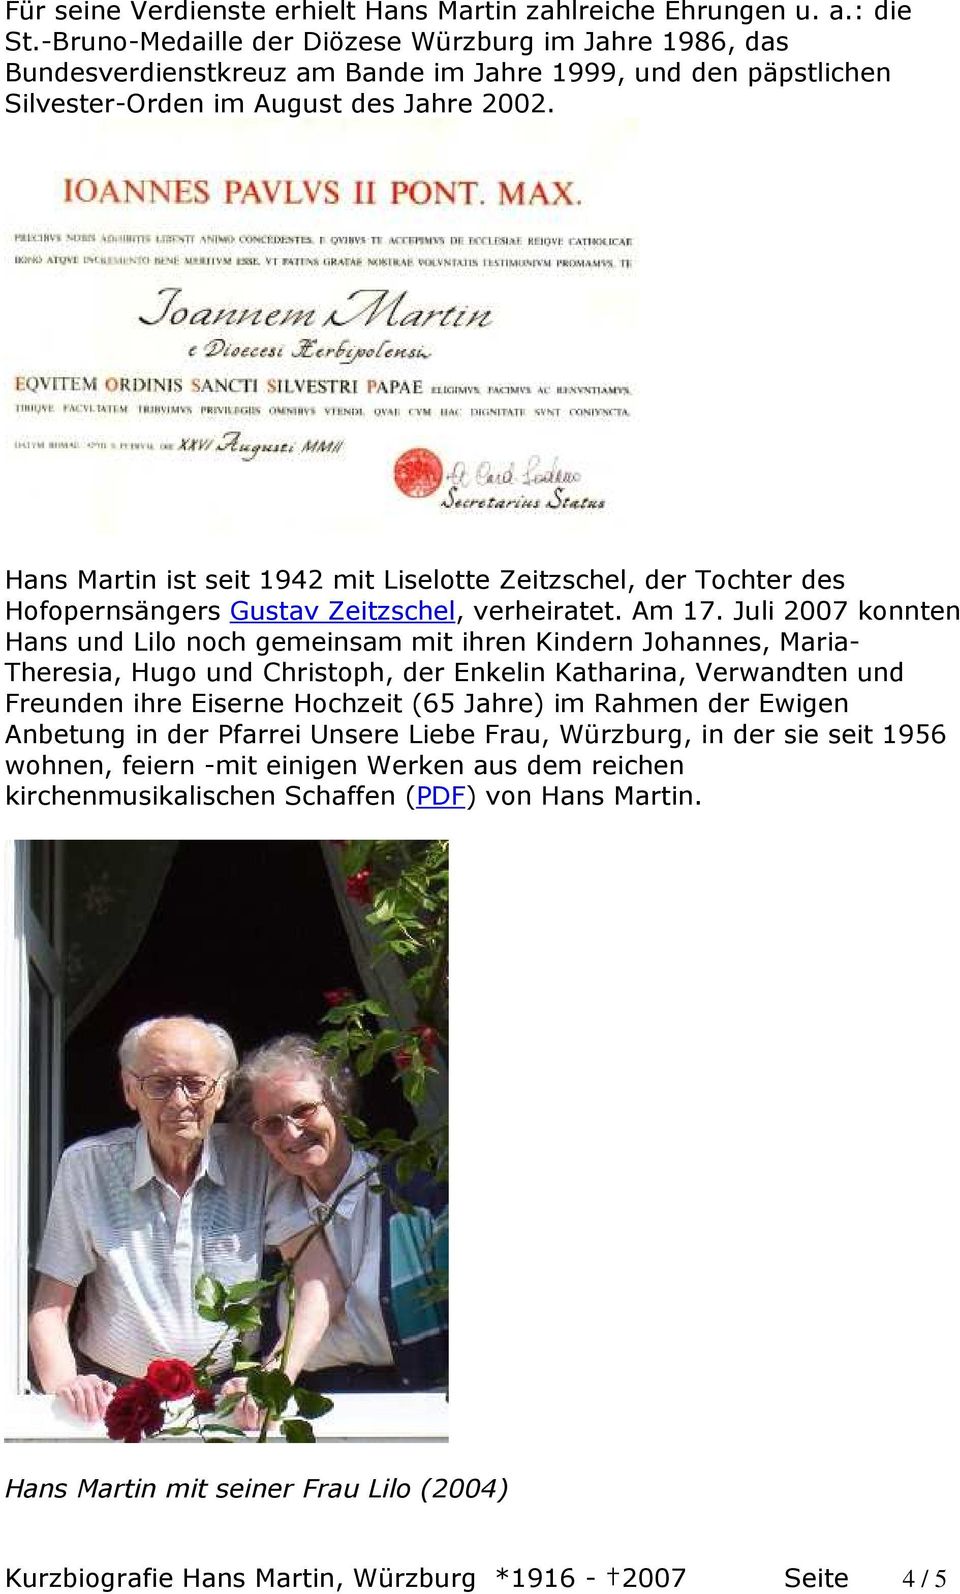 Hans Martin ist seit 1942 mit Liselotte Zeitzschel, der Tochter des Hofopernsängers Gustav Zeitzschel, verheiratet. Am 17.